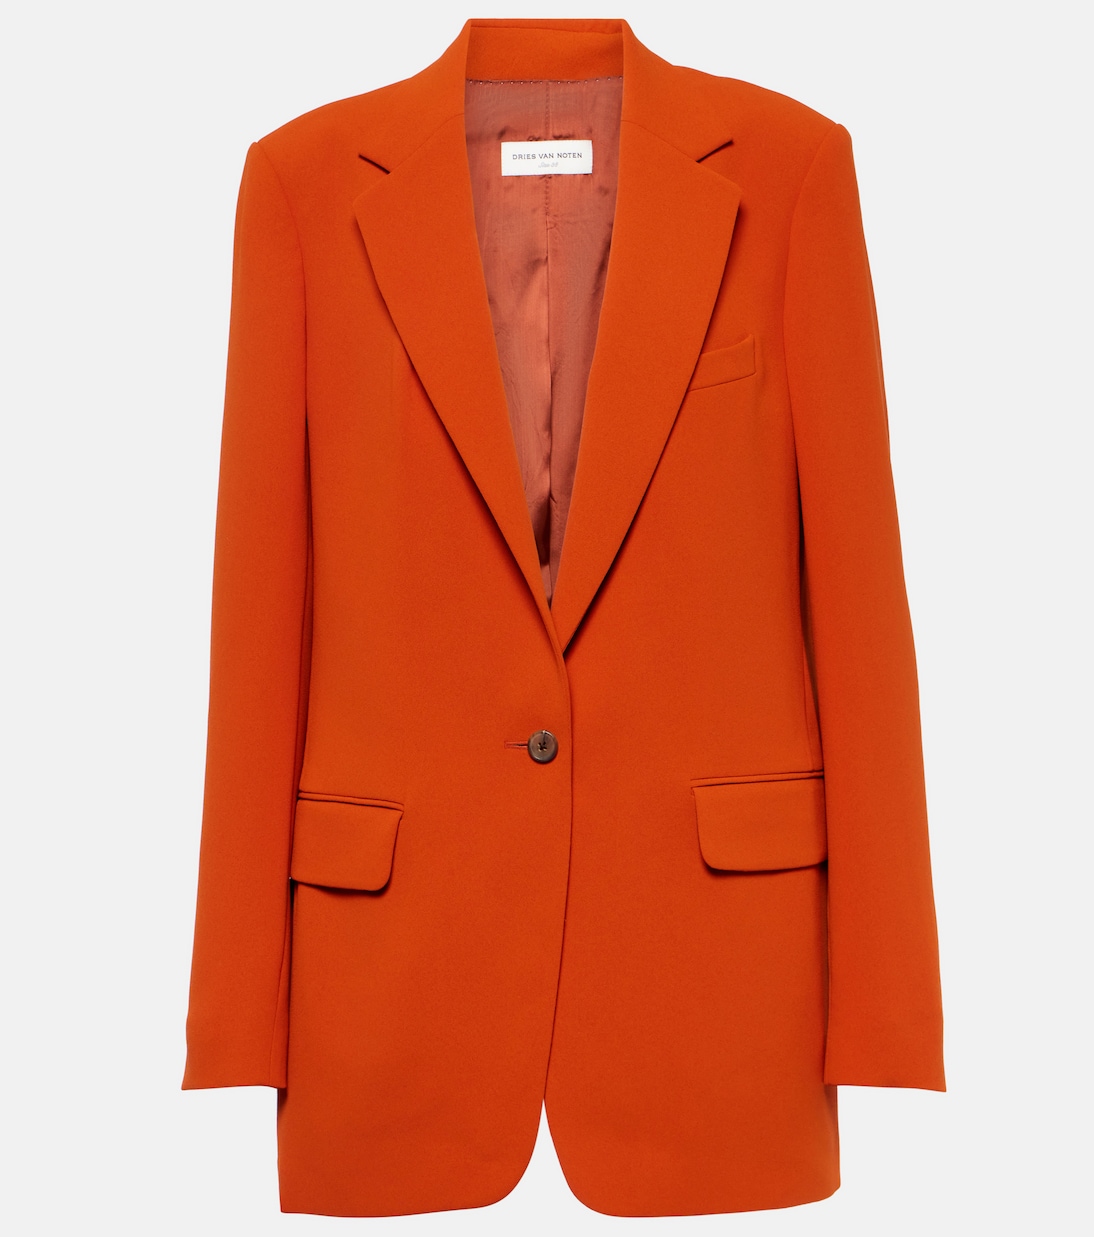 Креповый пиджак Dries Van Noten, оранжевый